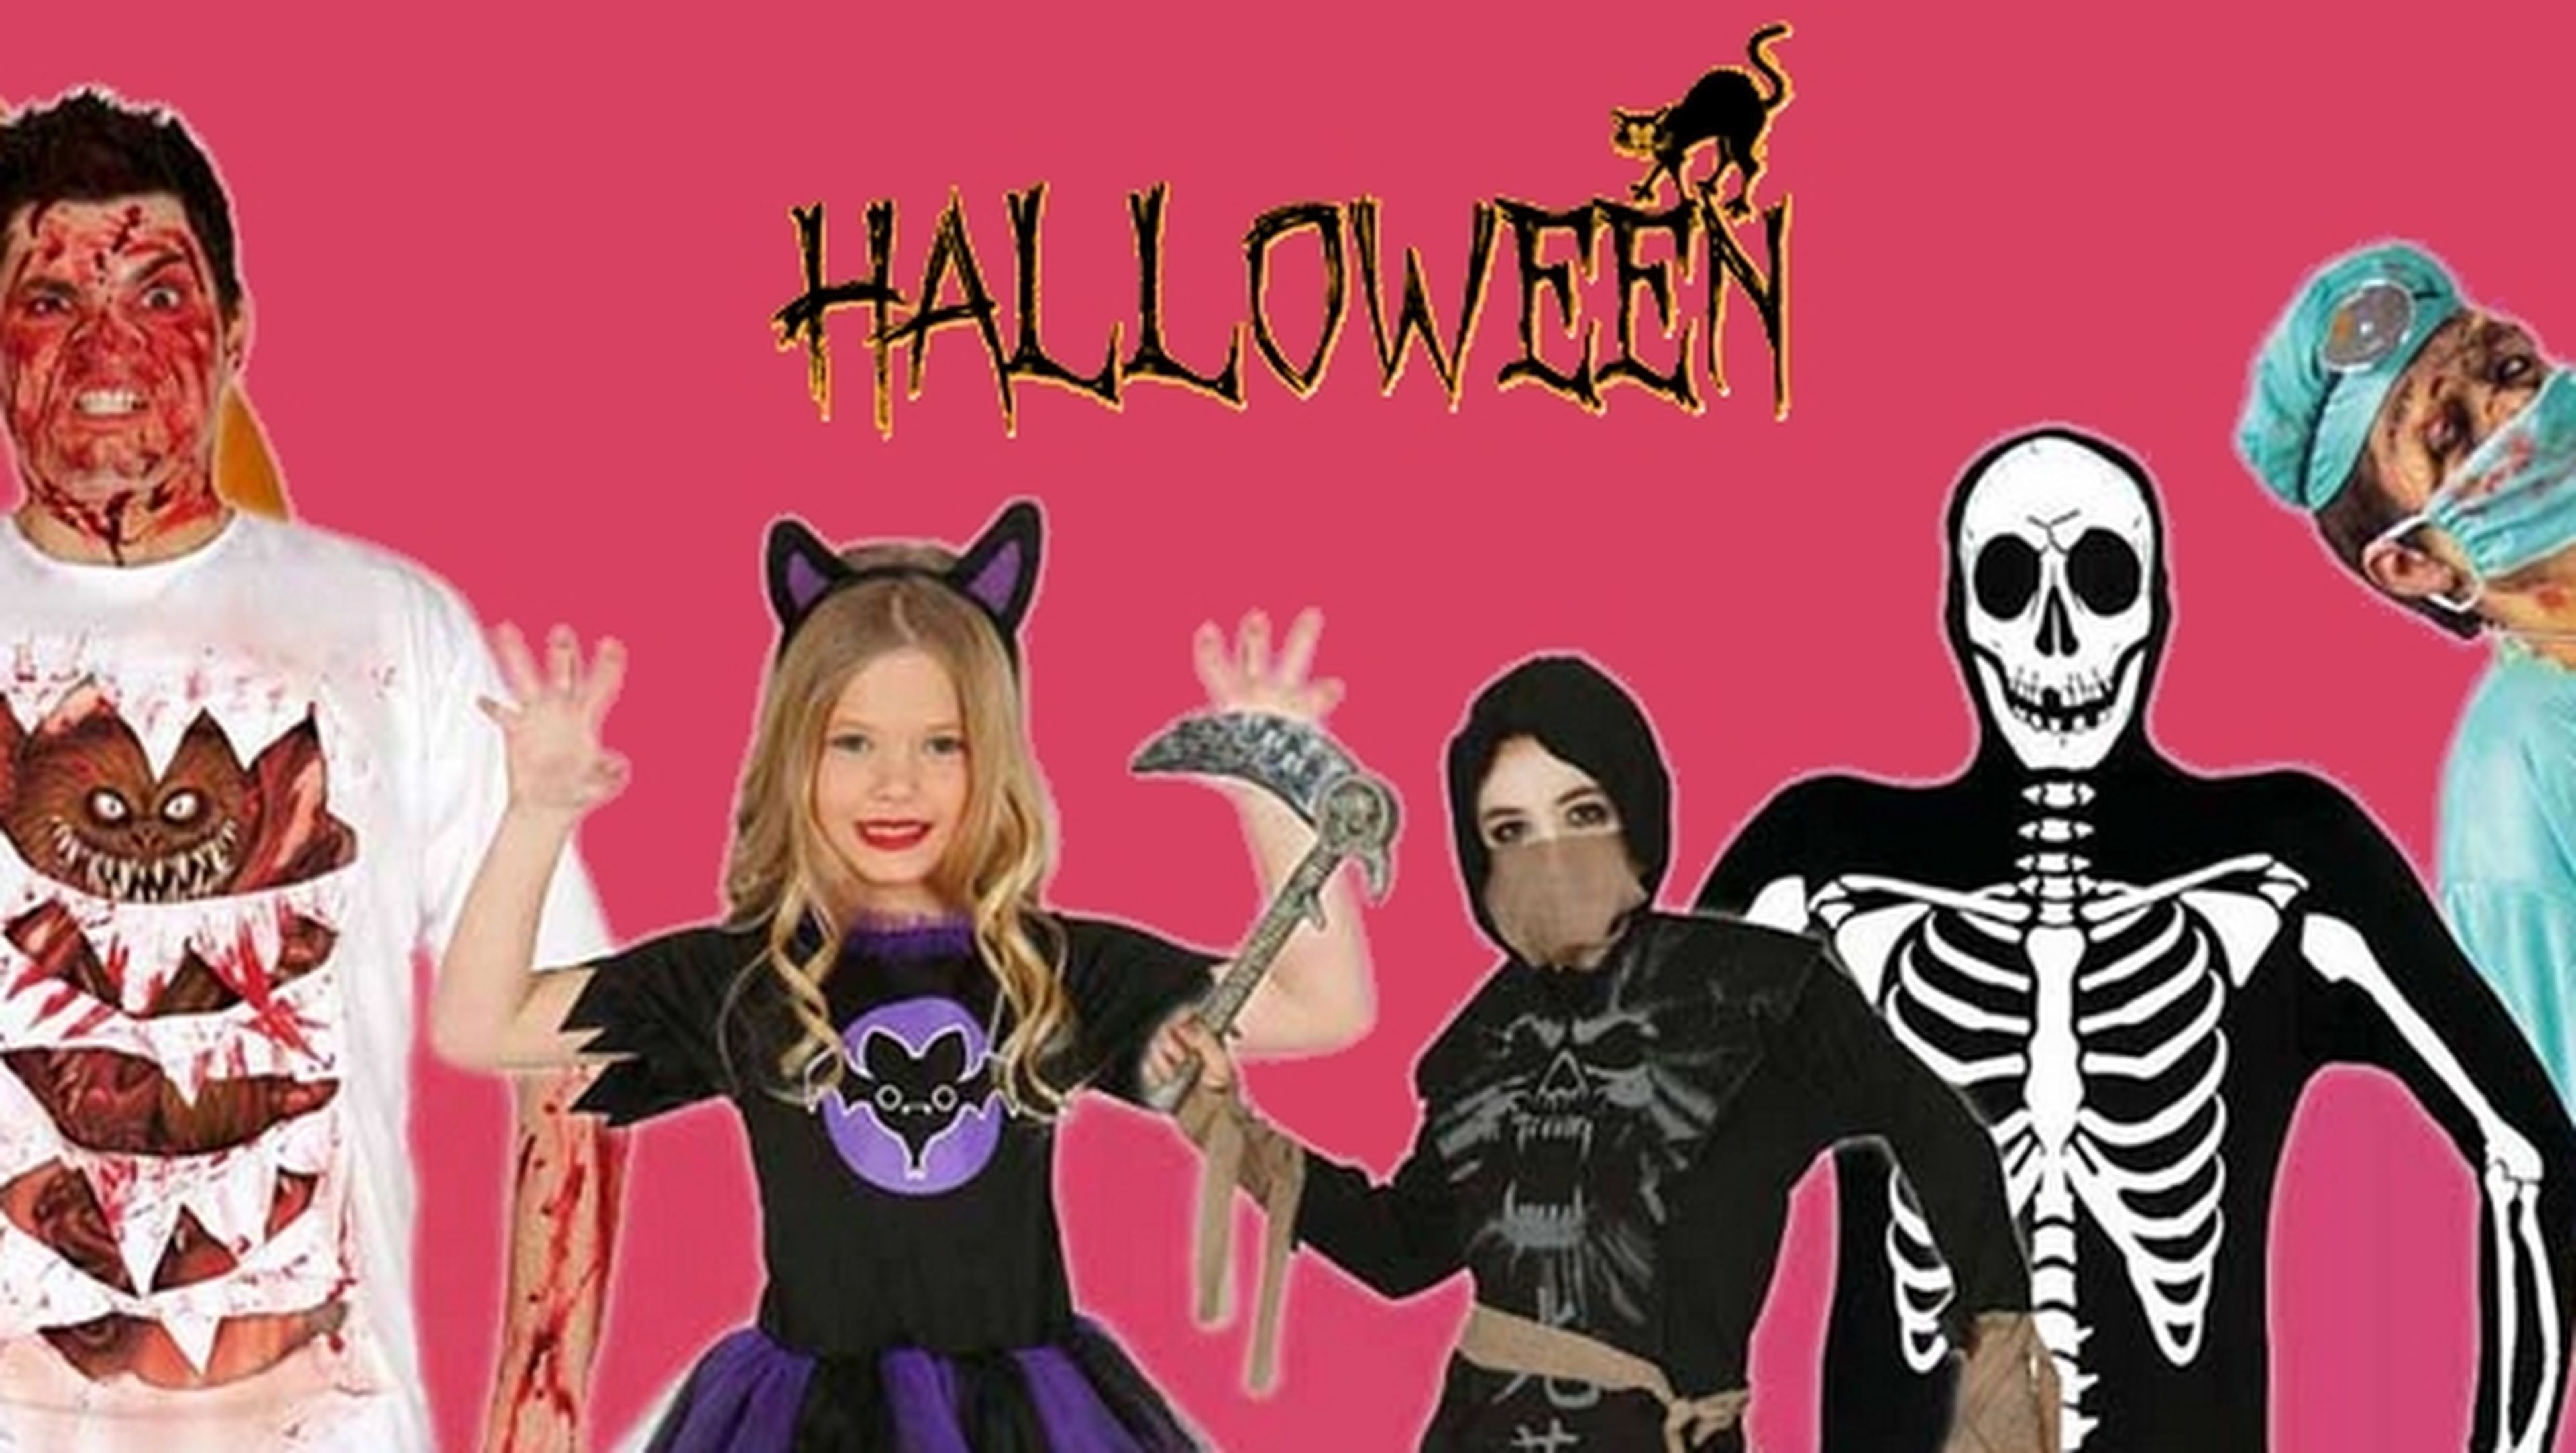 Los 7 mejores disfraces y más originales para Halloween 2015